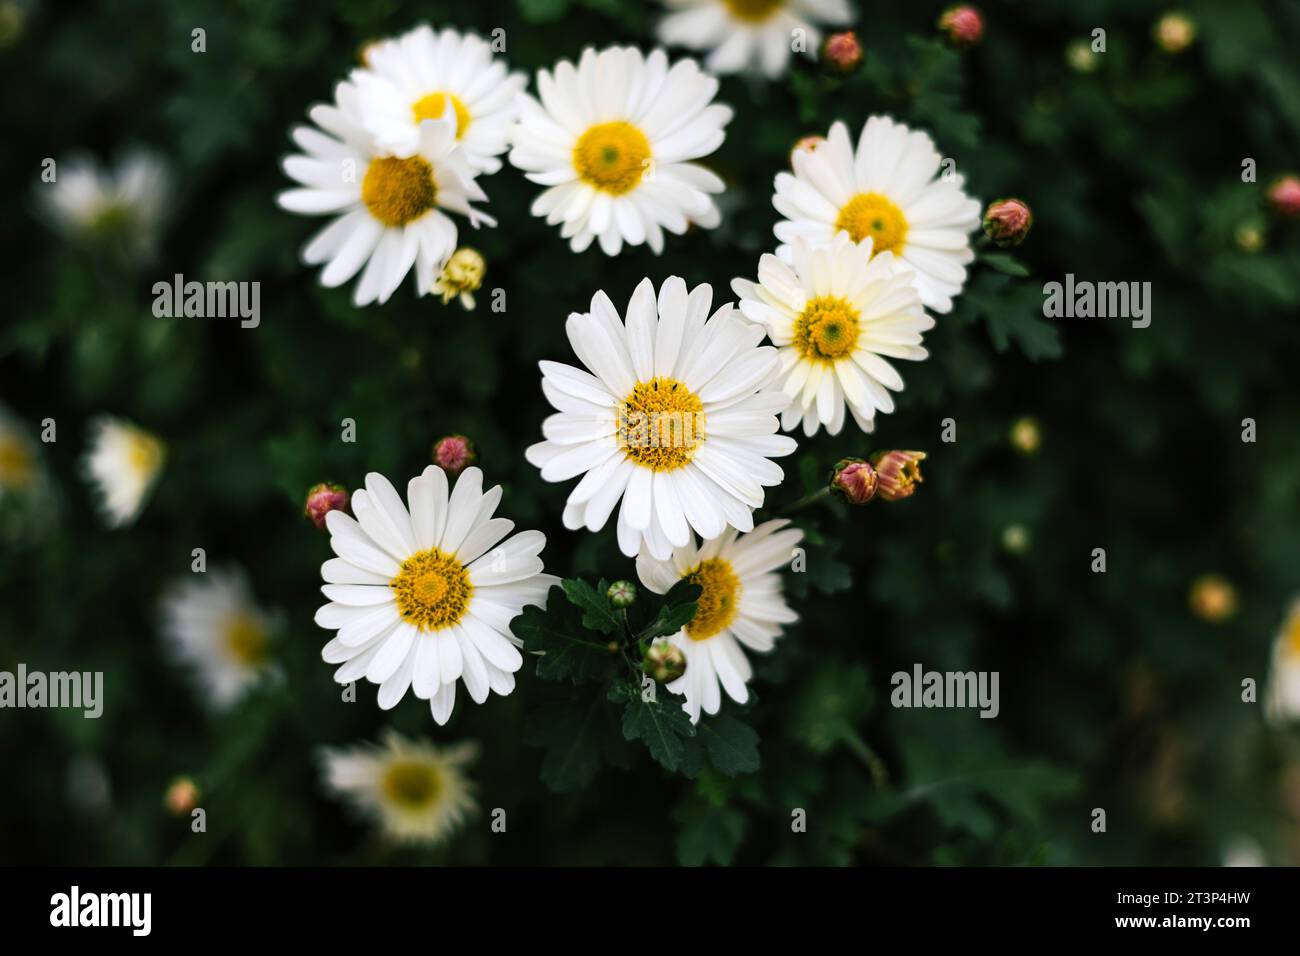 Matricaria chamomilla pianta a fiore annuale della famiglia delle Asteraceae. Cespuglio a margherita con petali bianchi, infiorescenza gialla e steli verdi. Flor estivo Foto Stock